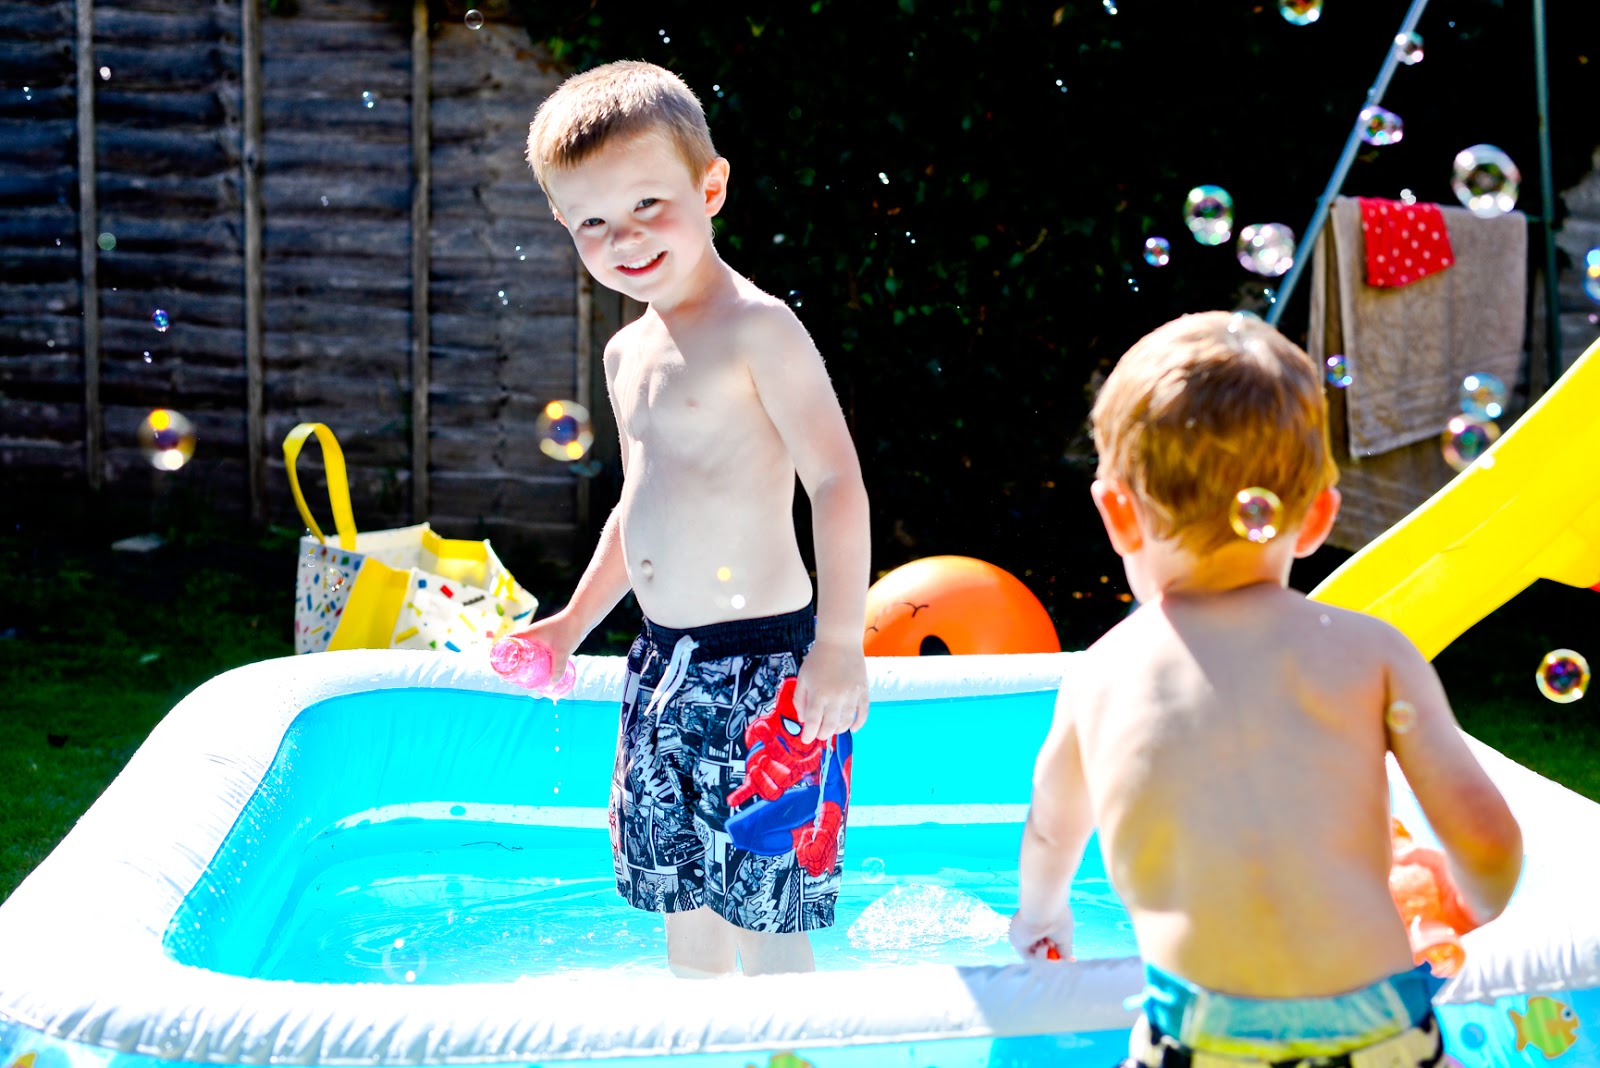 paddling pool for garden, summer days, summer family days, fun garden toys for kids,